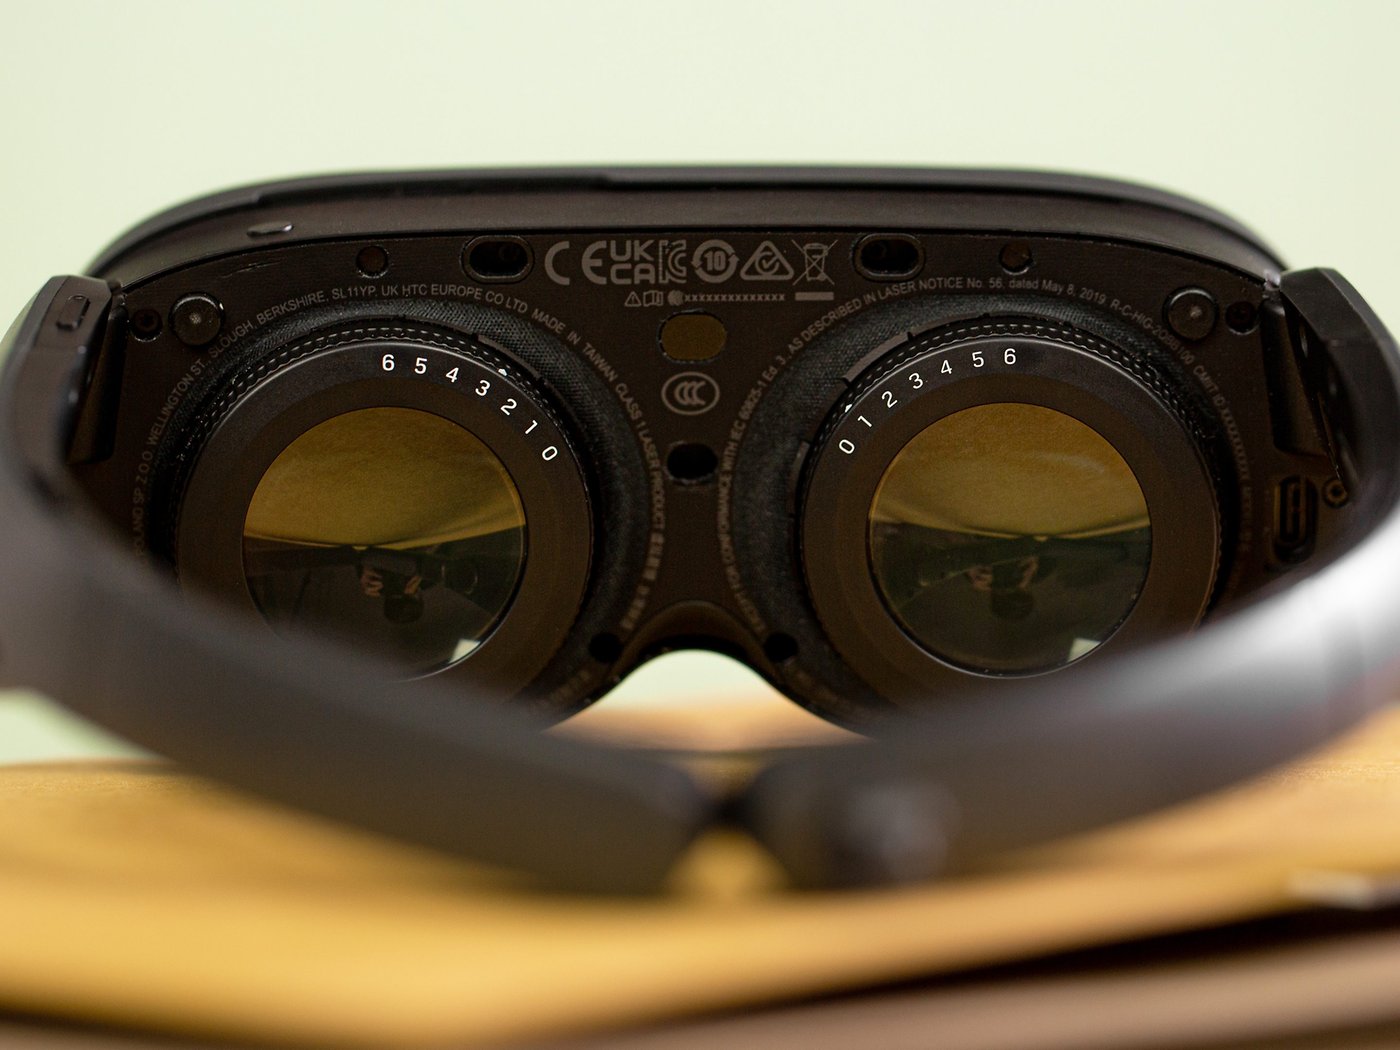 Ça suffit maintenant : Samsung aussi pourrait lancer prochainement son casque  VR Windows Mixed Reality